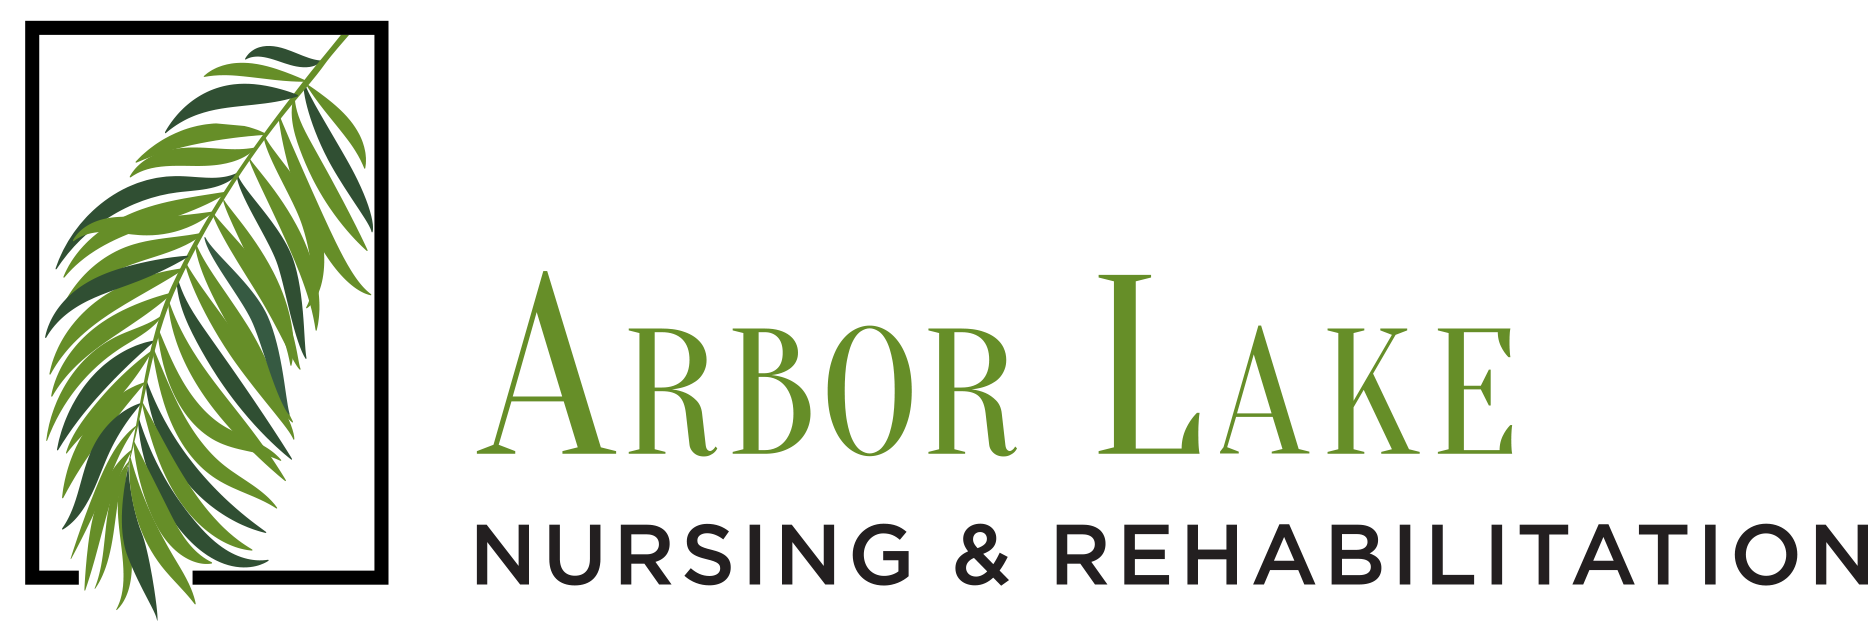 Arbor Lake Nursing & Rehabilitation